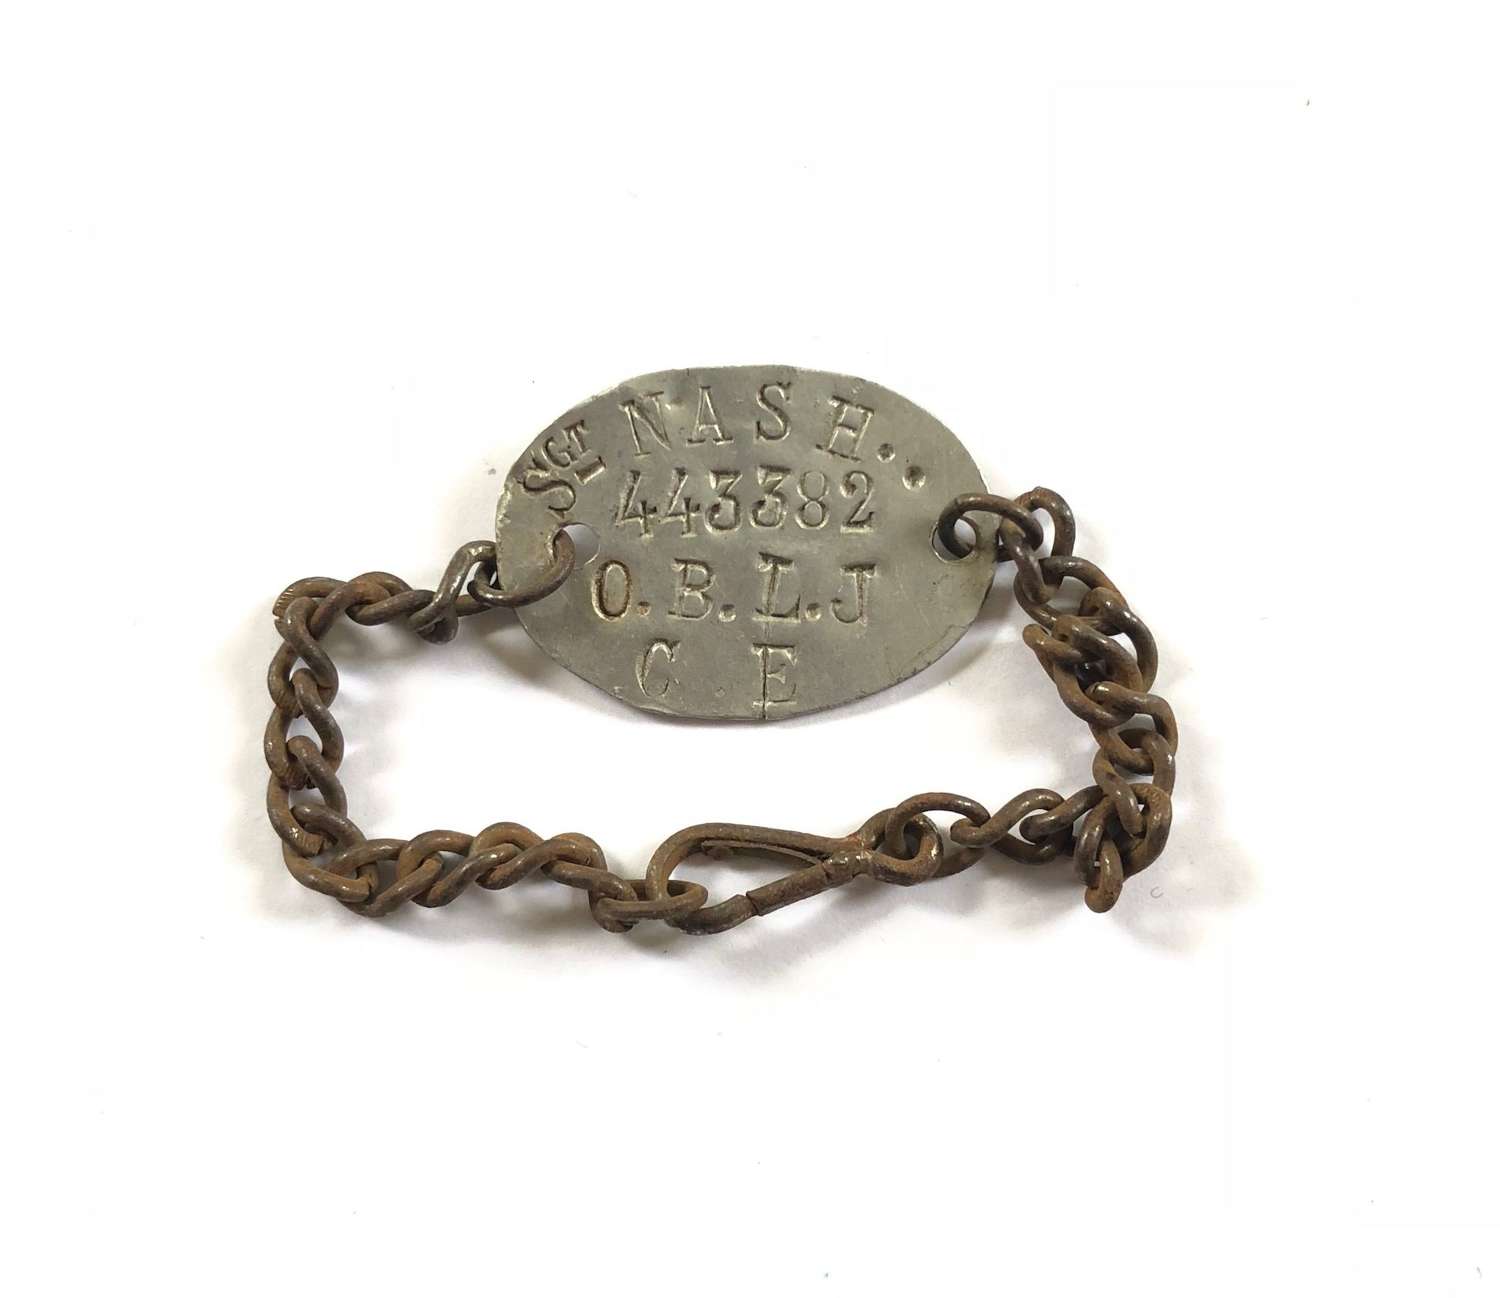 WW1 Ox & Bucks Light Infantry ID Bracelet.